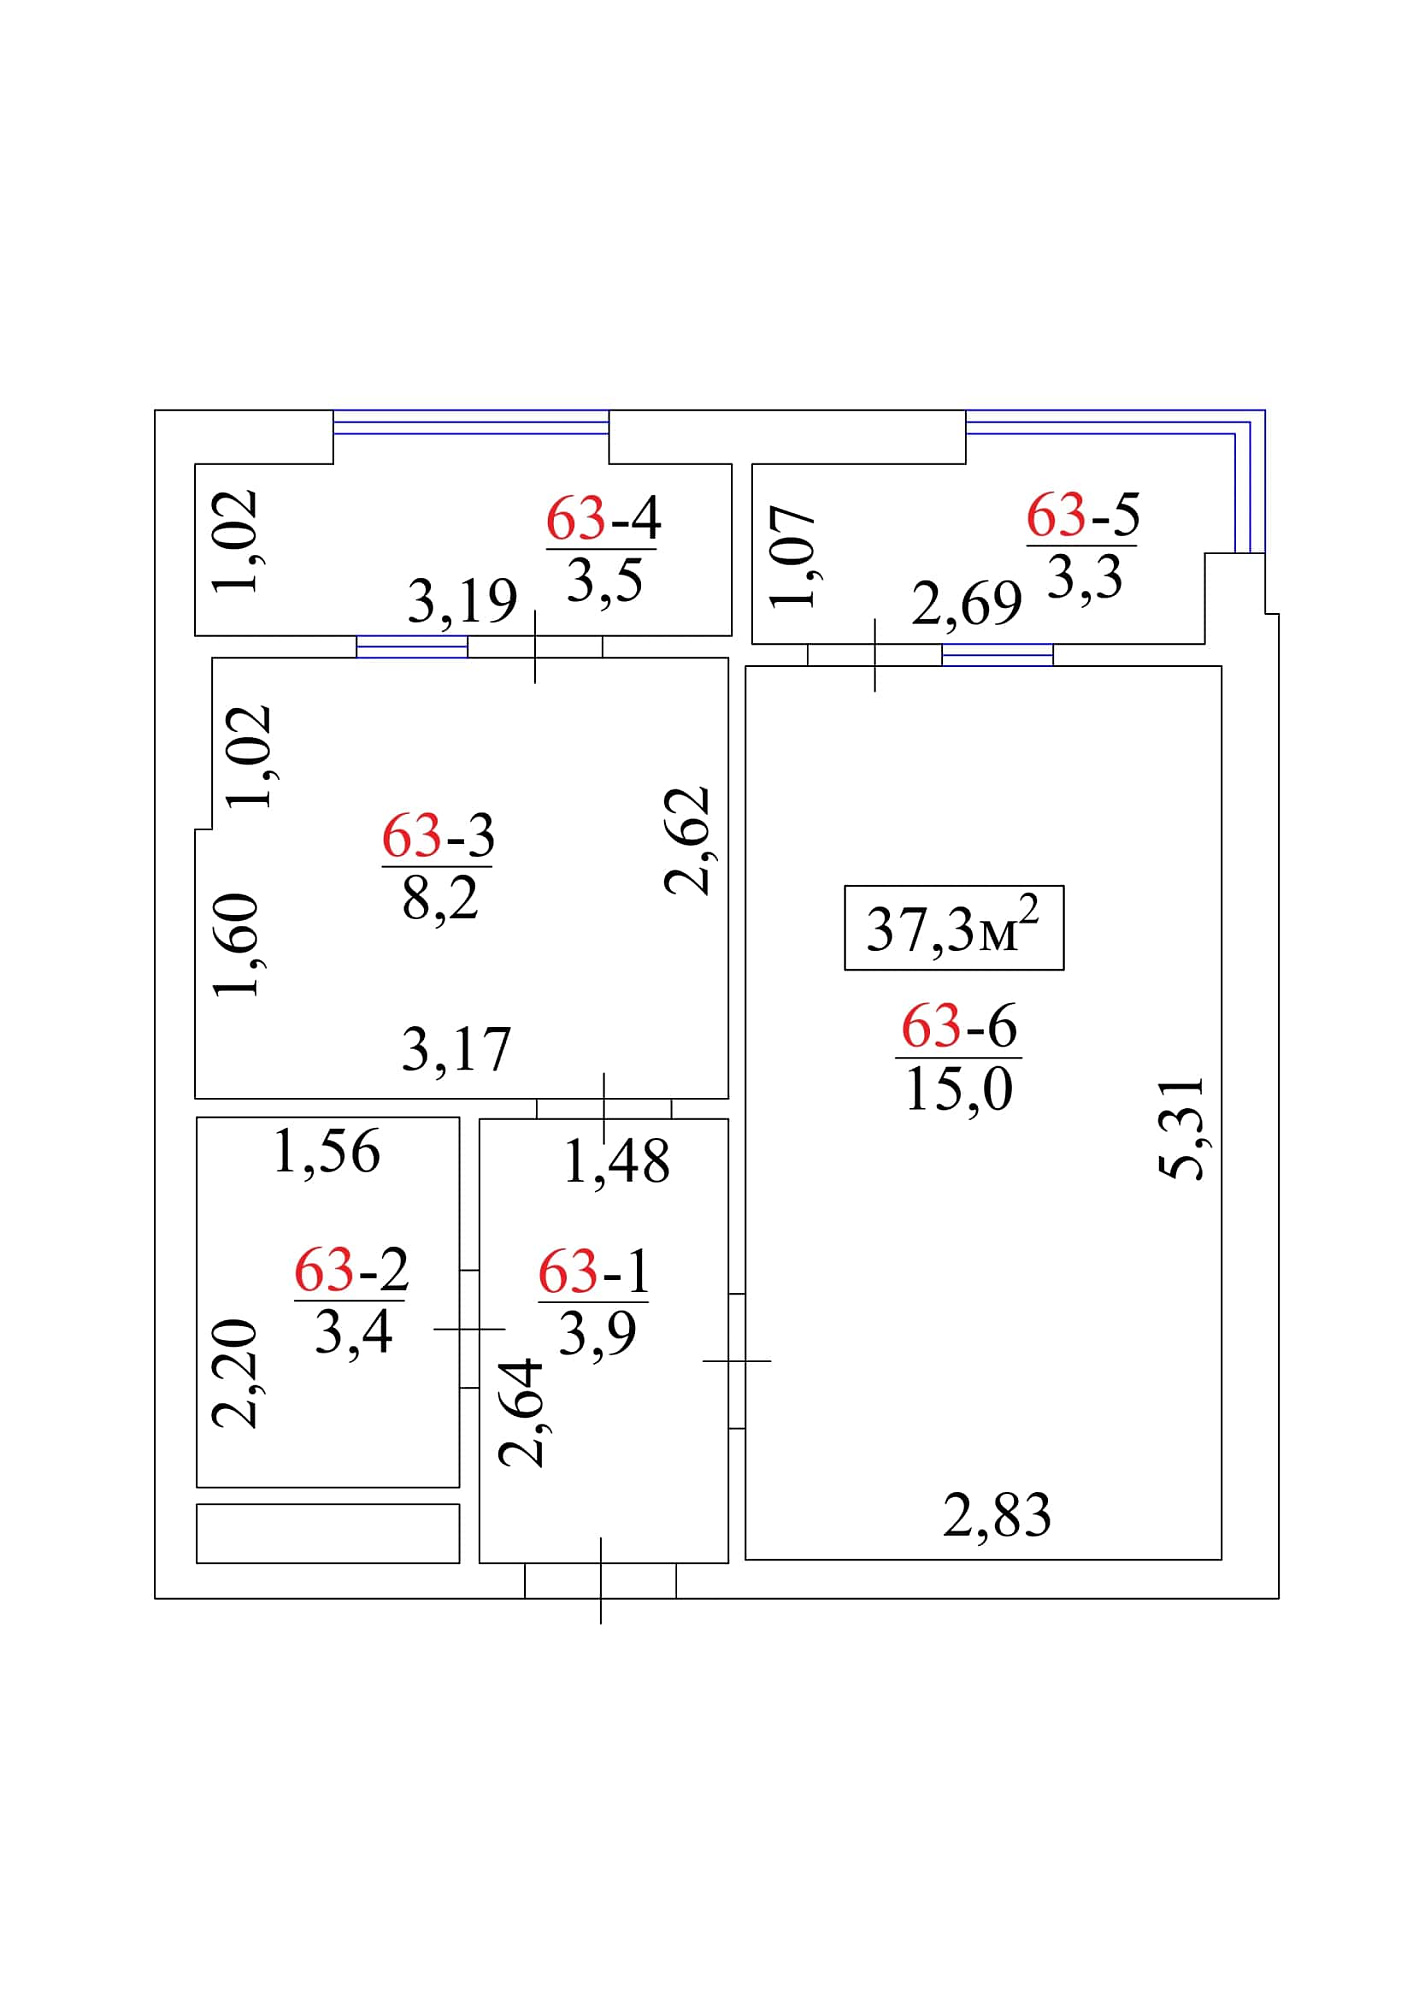 Планировка 1-к квартира площей 37.3м2, AB-01-07/0060а.